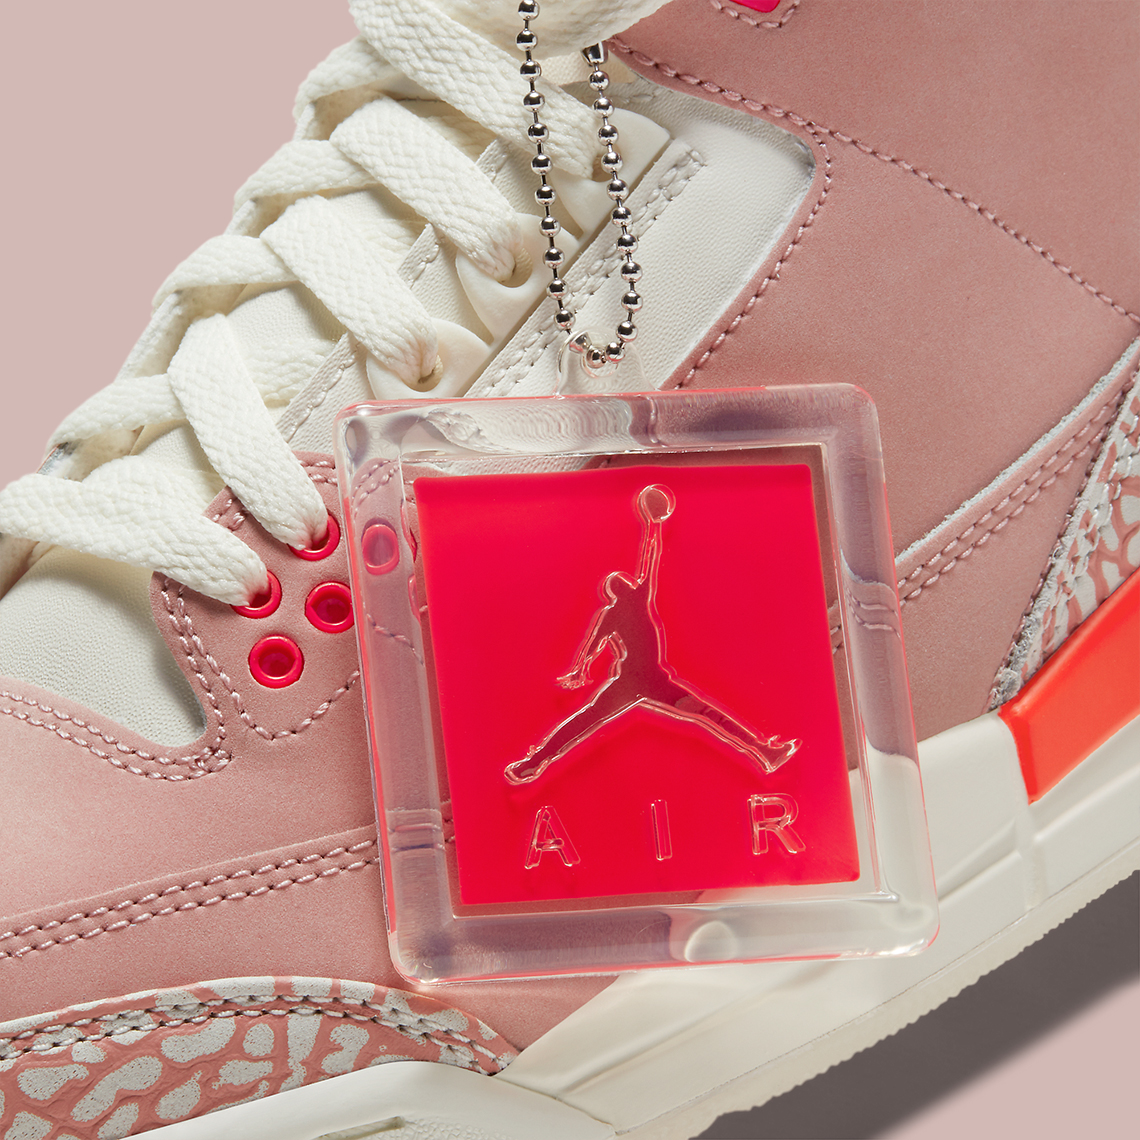 Air Jordan 3 Rust Pink CK9246-600 Release Date | SneakerNews.com